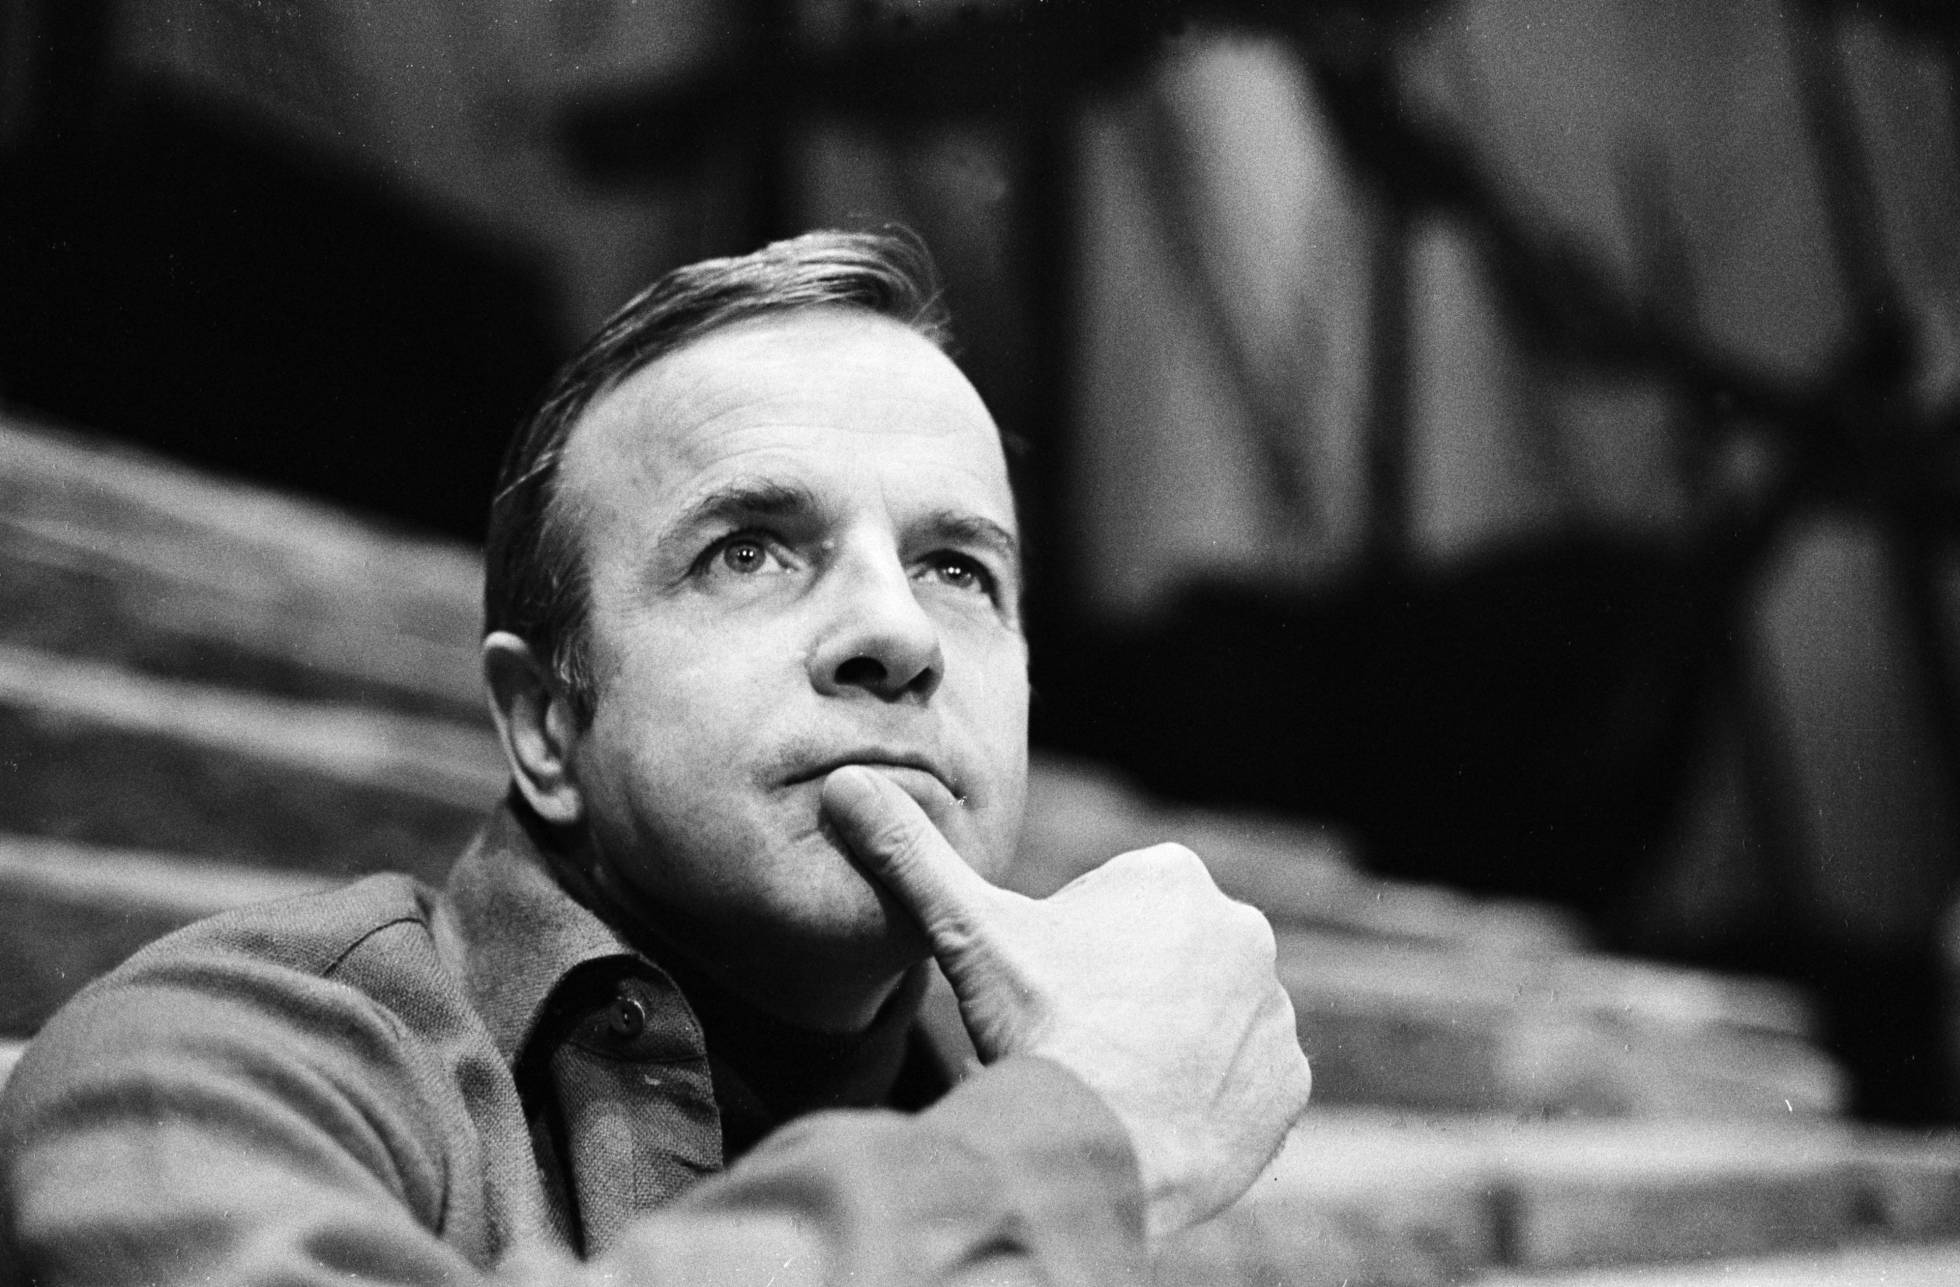 Fallece a los 96 años el director de cine Franco Zeffirelli, el genio de ‘Jesús de Nazareth’ 1560598452_860090_1560599491_noticia_normal_recorte1